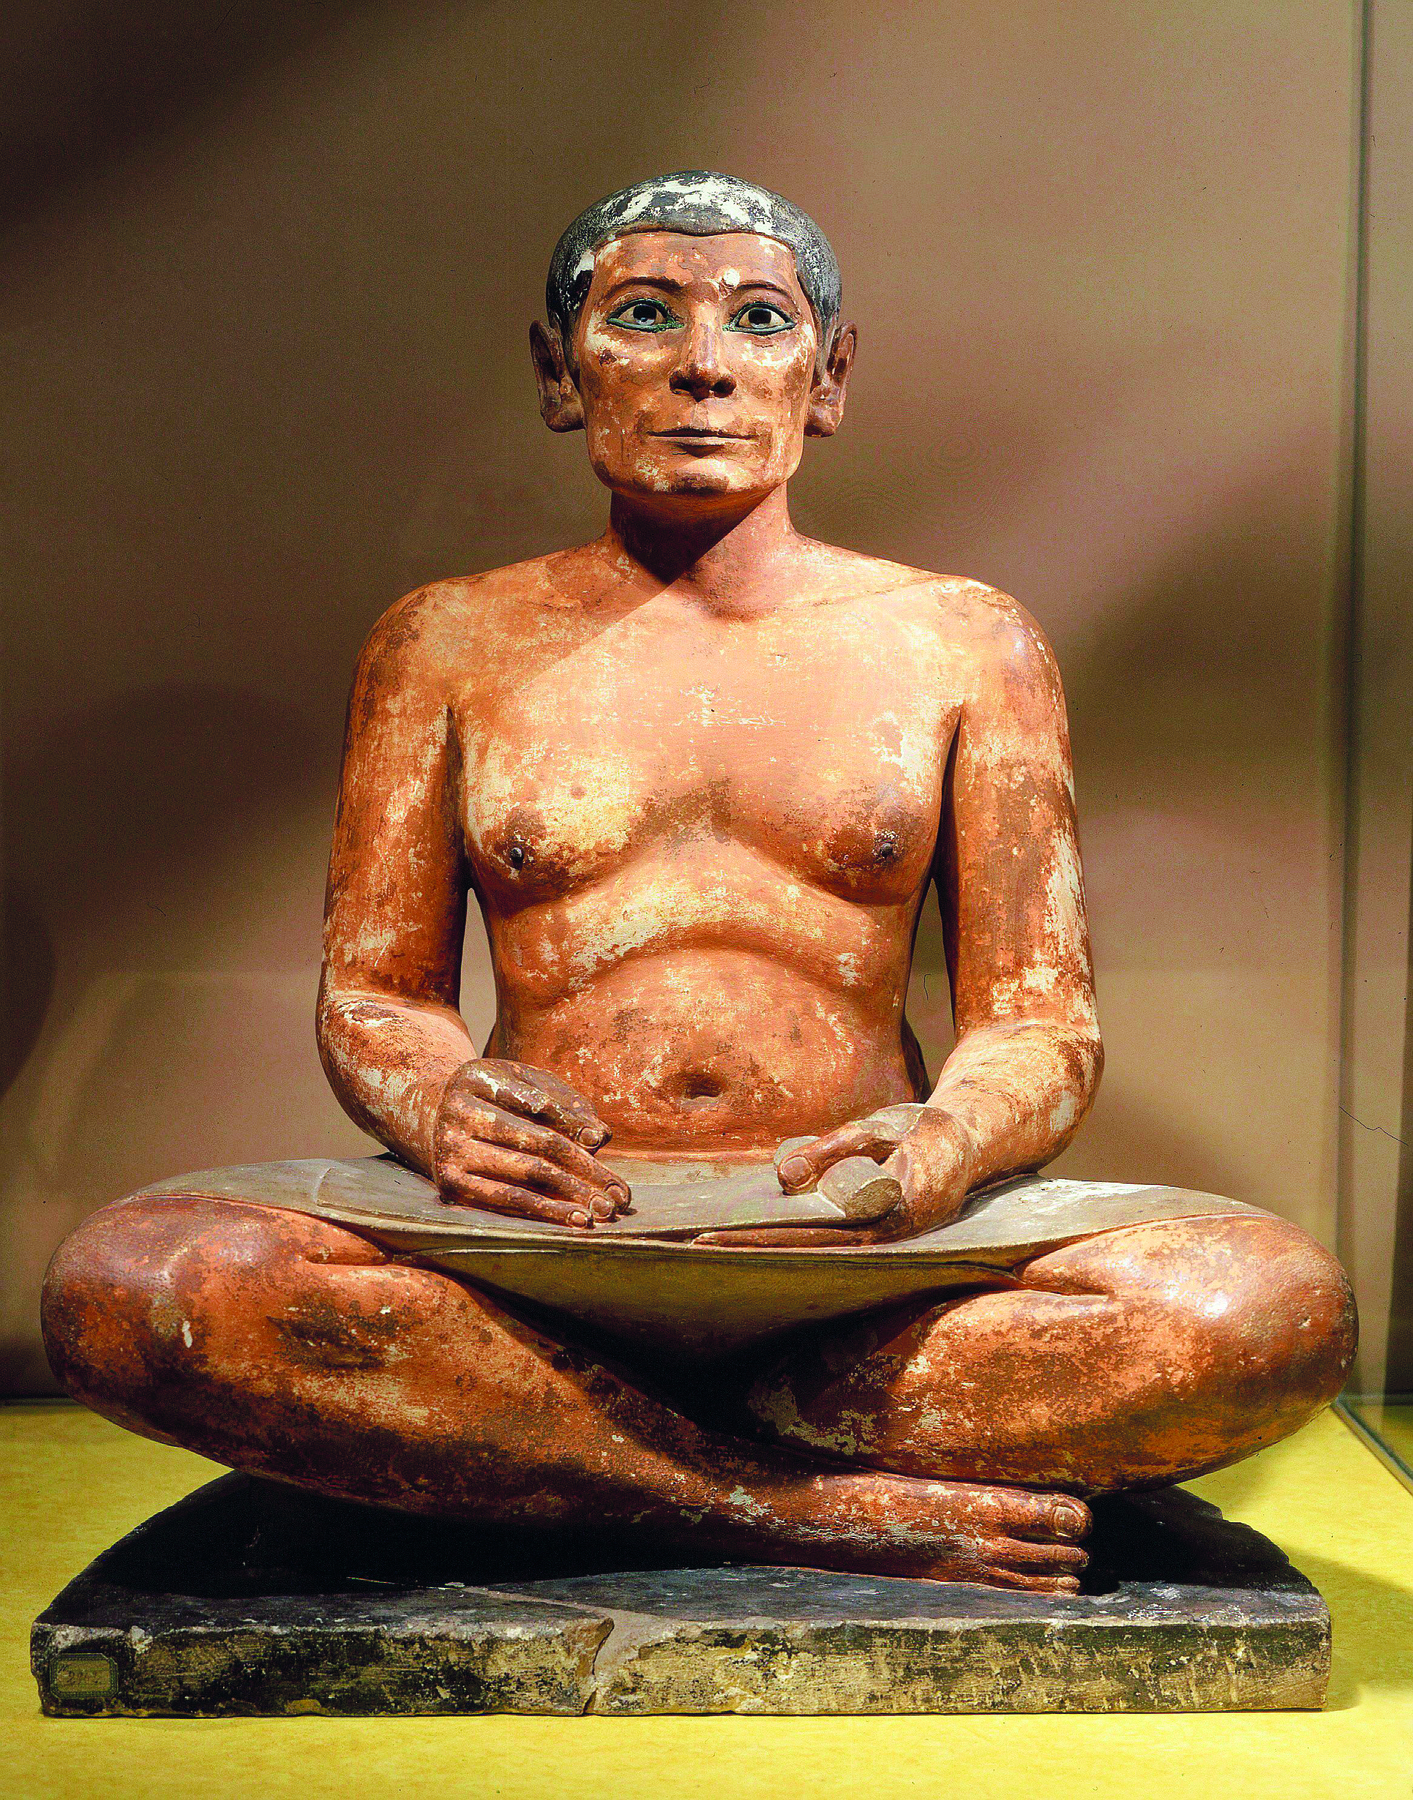 Escultura. Um homem com peito desnudo, sentado no solo com as pernas cruzadas, apoiando uma folha de papiro sobre seu colo.